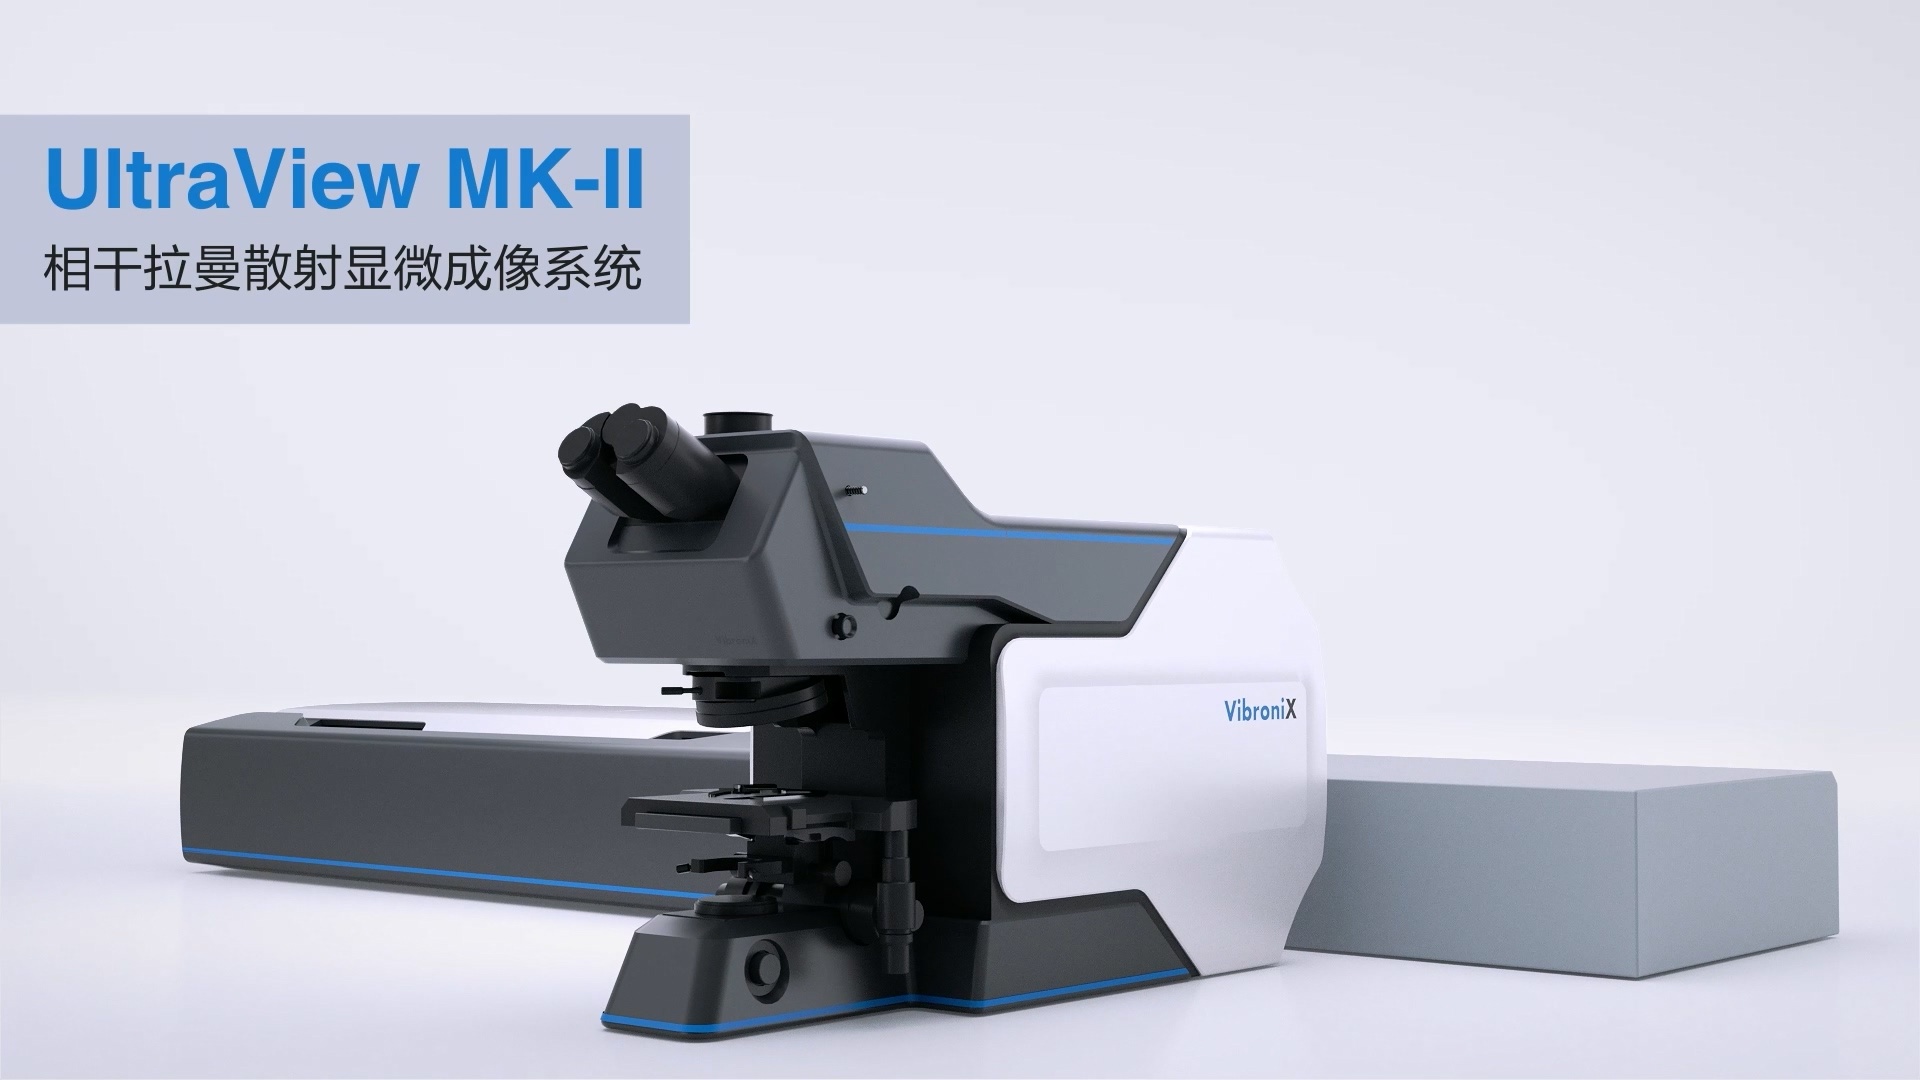 相干拉曼散射显微成像系统 UltraView MK-II